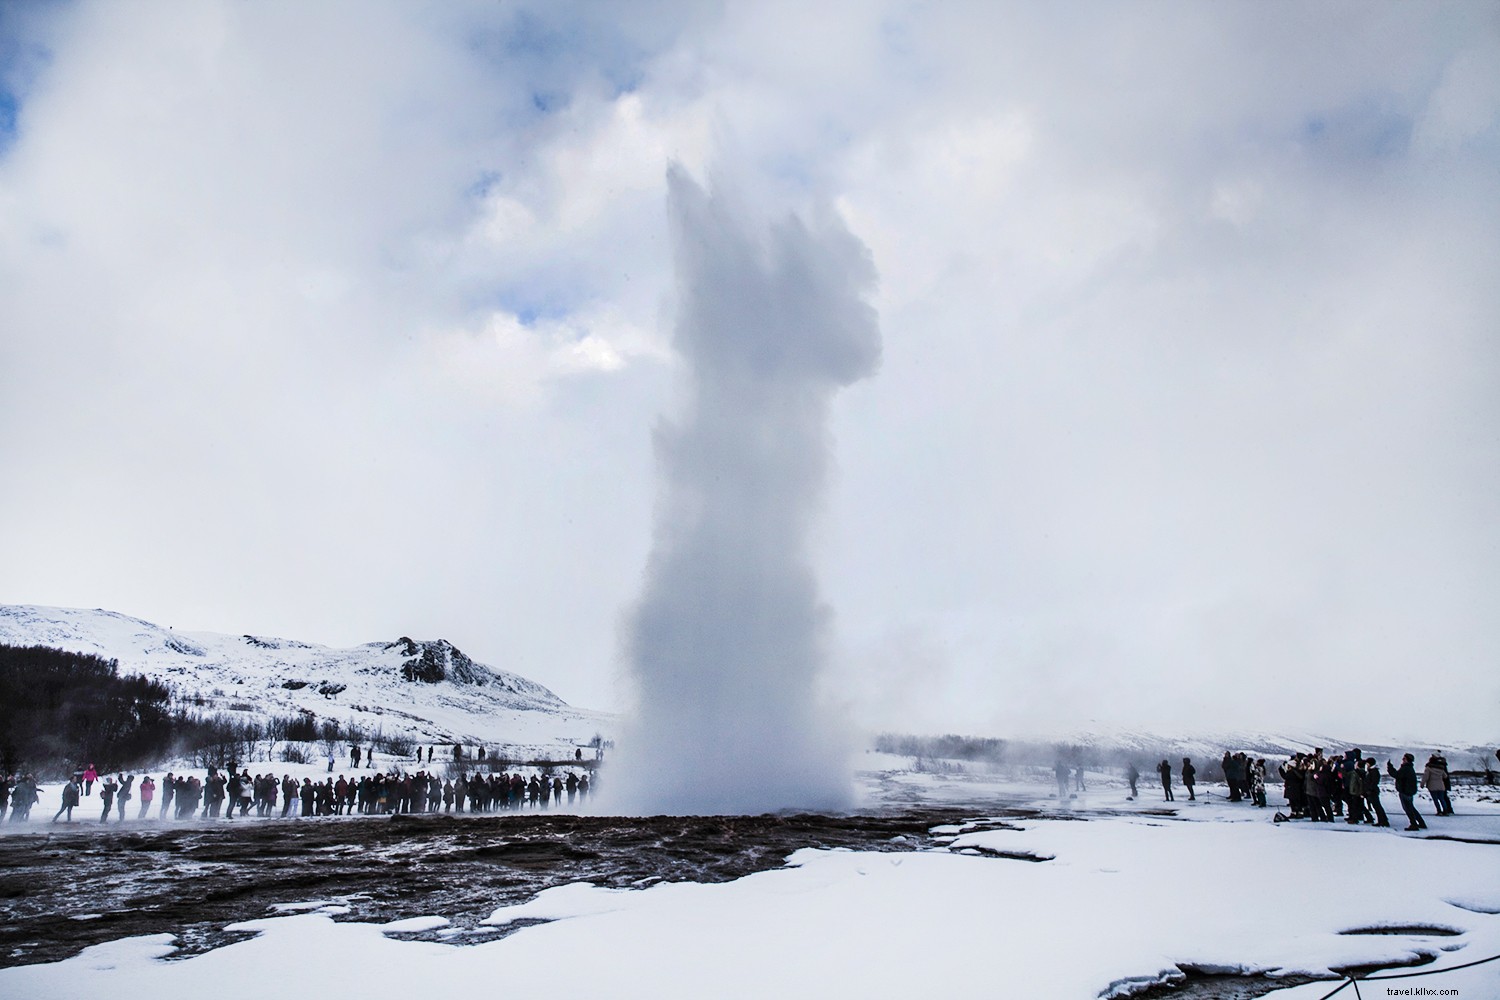 Islandia en invierno ... ¿Vale la pena? Absolutamente. 